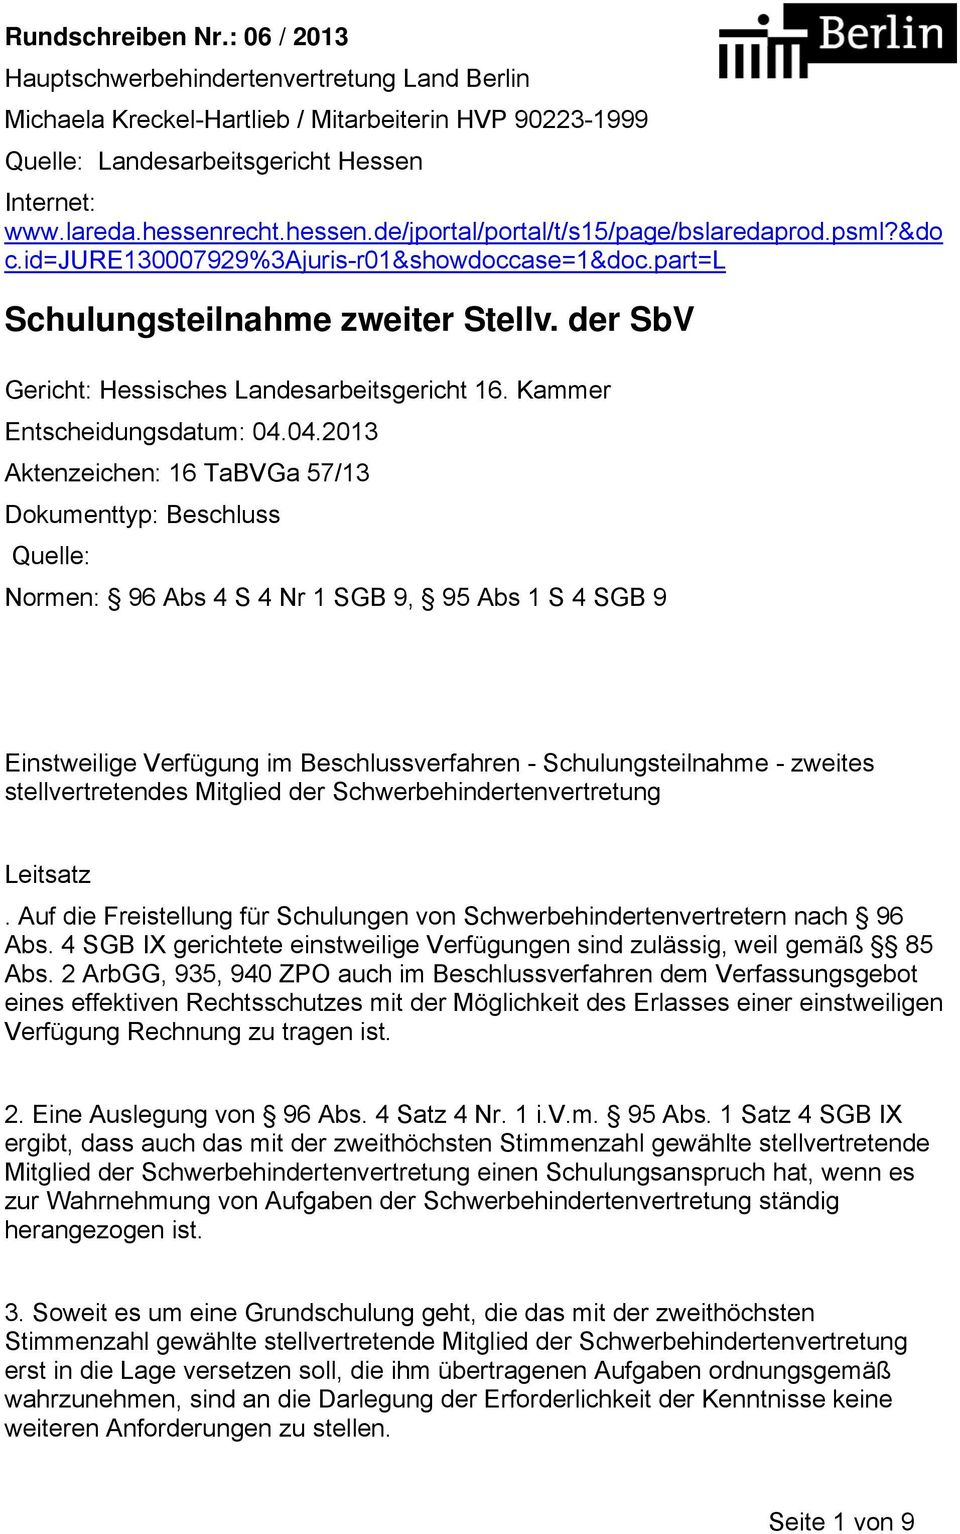 der SbV Gericht: Hessisches Landesarbeitsgericht 16. Kammer Entscheidungsdatum: 04.